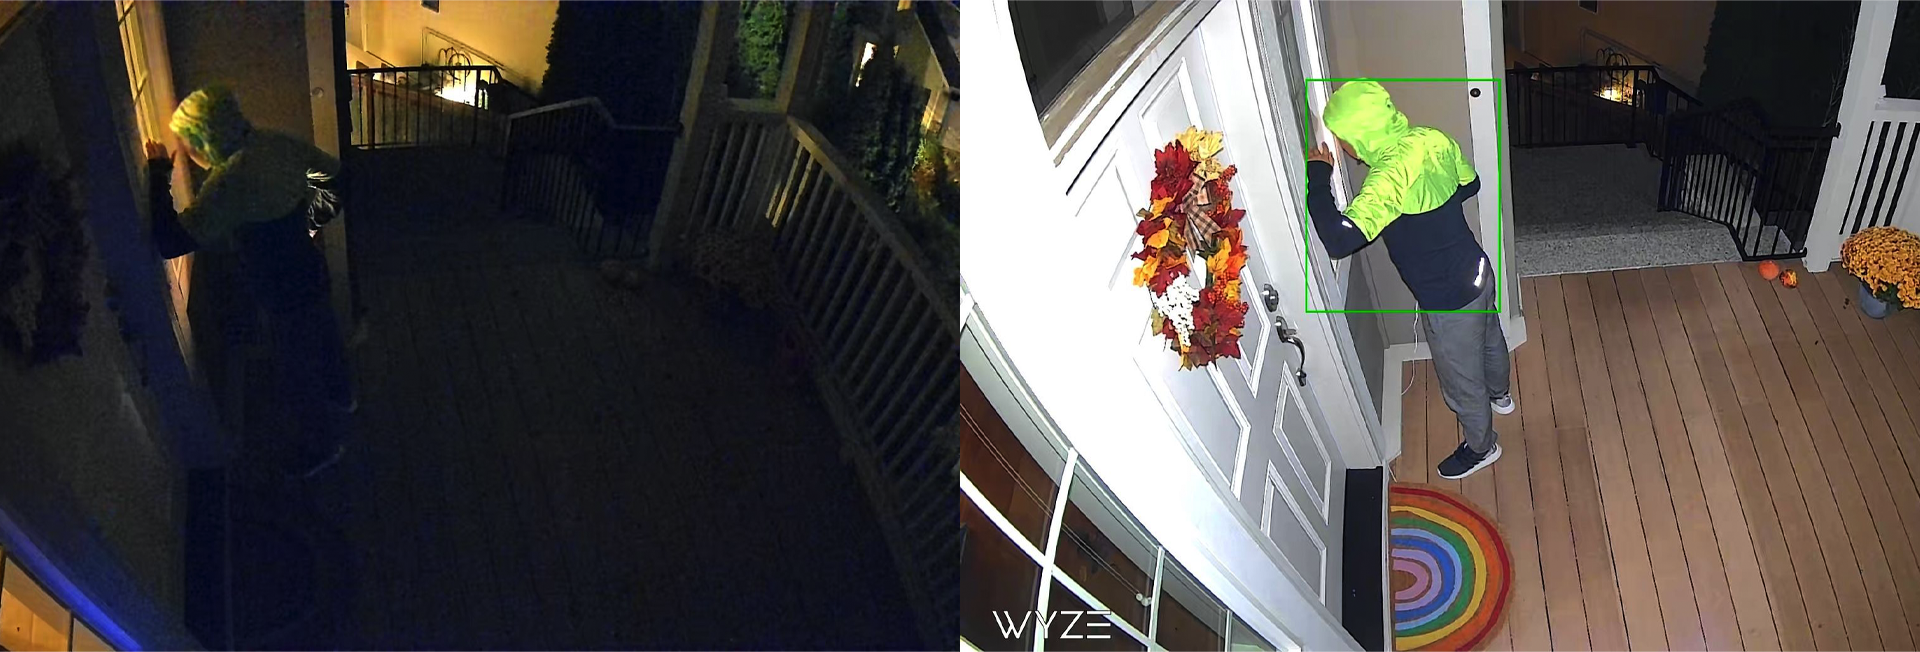 Gambar seorang pria mengetuk pintu di malam hari dengan Wyze Cam Spotlight menyala dan mati.